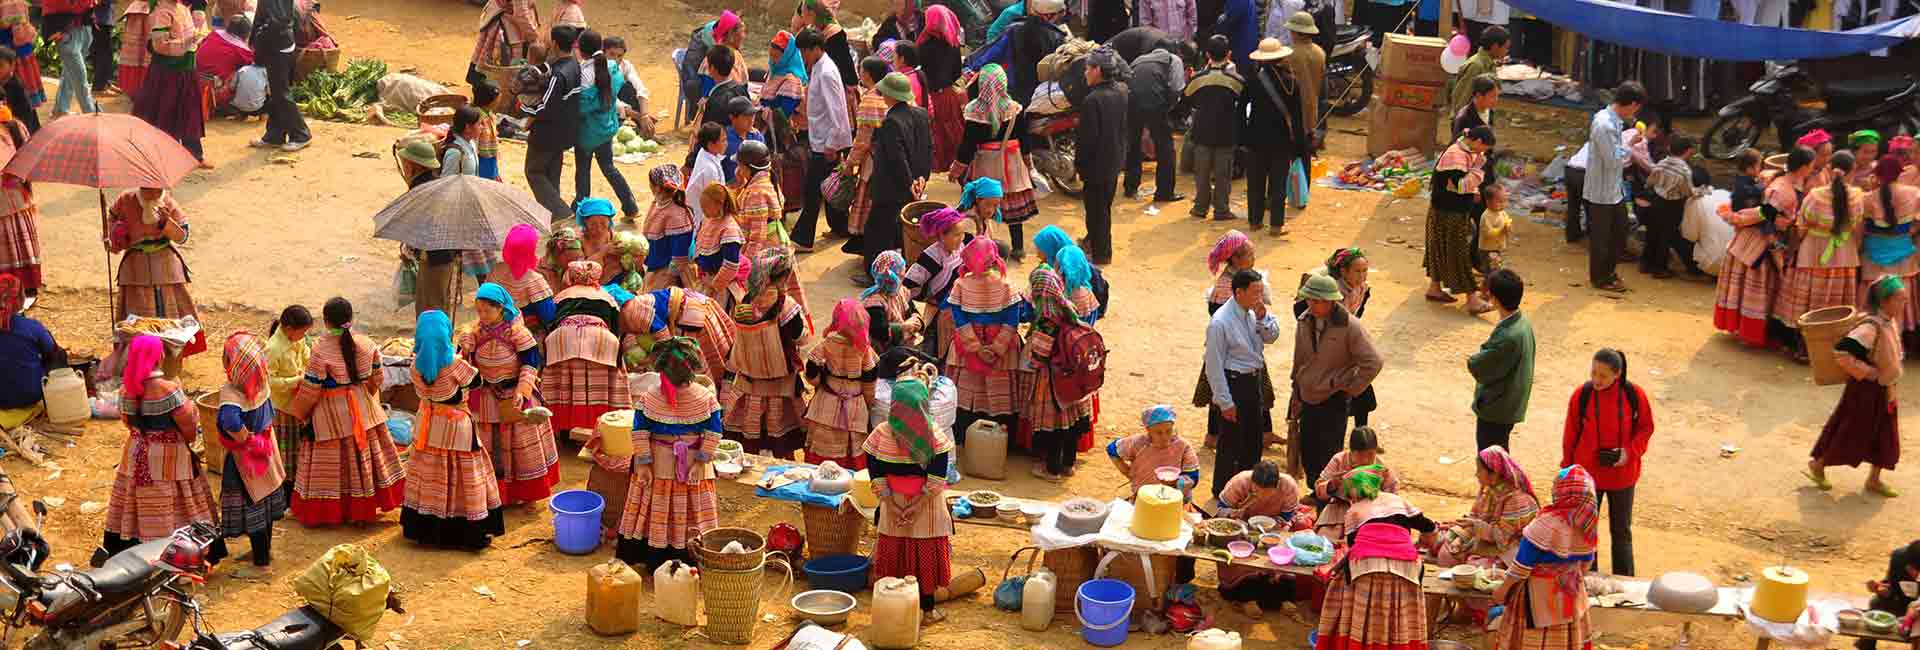 marché-ethnique-vietnam